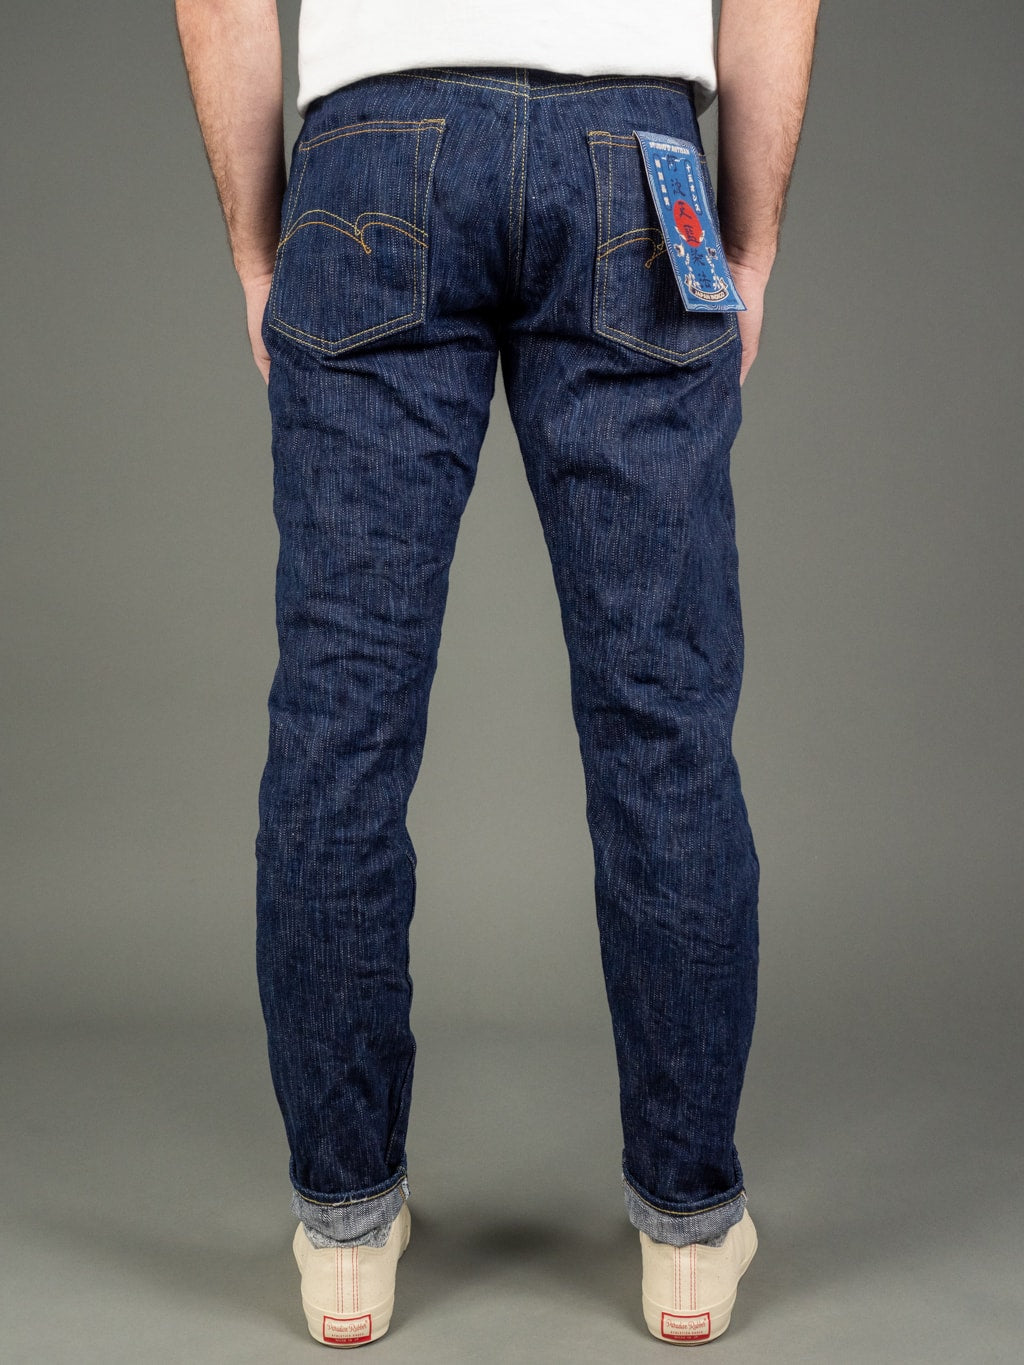 Studio DArtisan Tokushima Natural Indigo High Rise Tapered Denim Jeans Japan Made